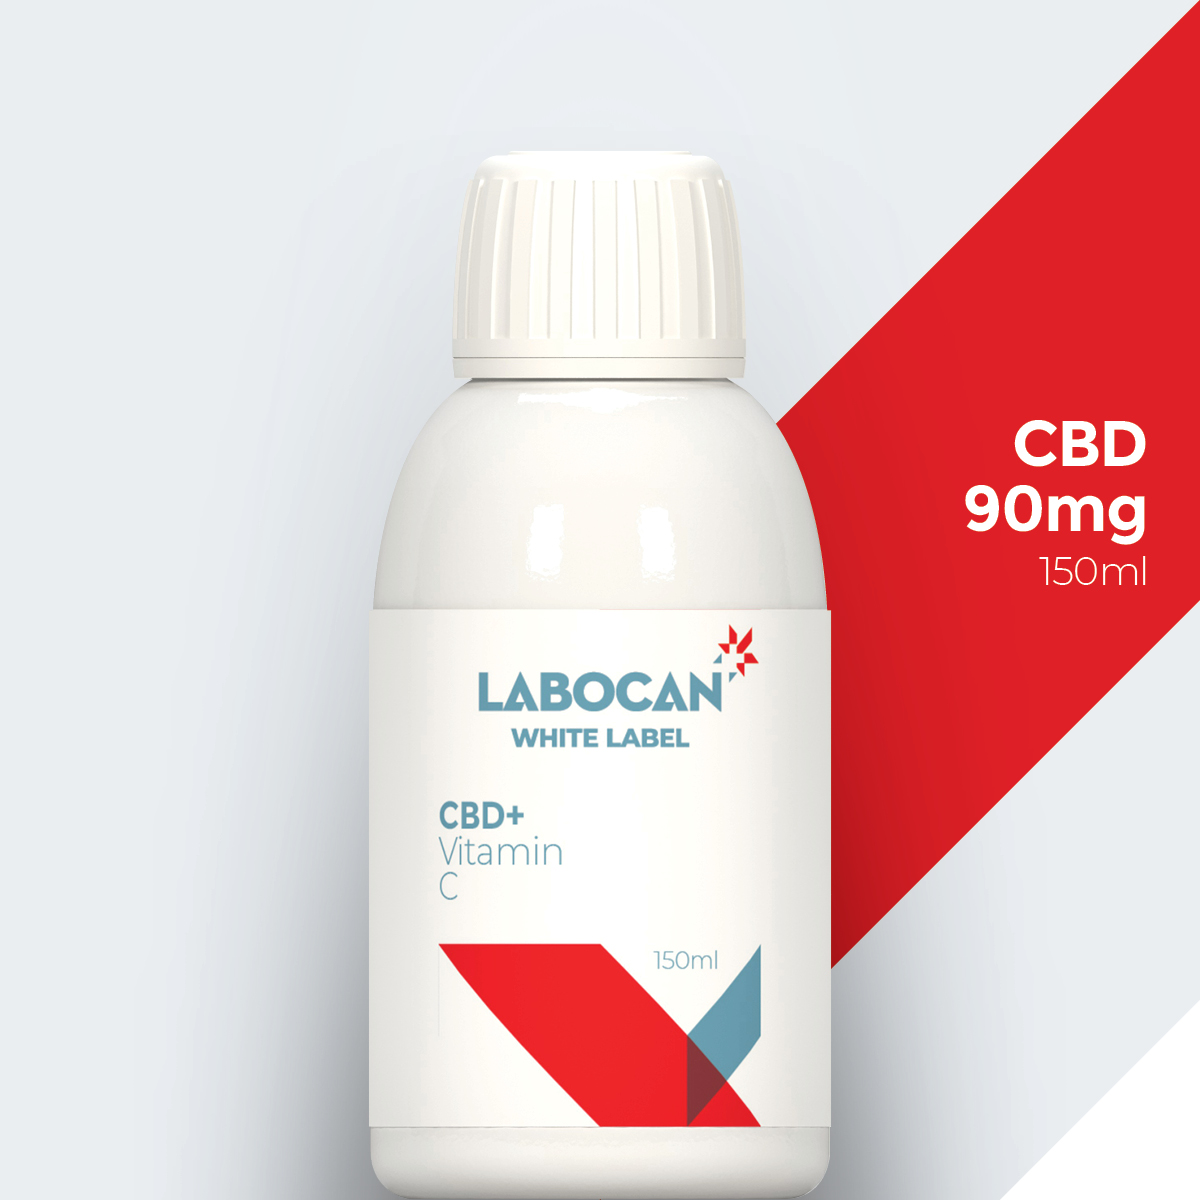 Labocan White label Cbd with vitamin C